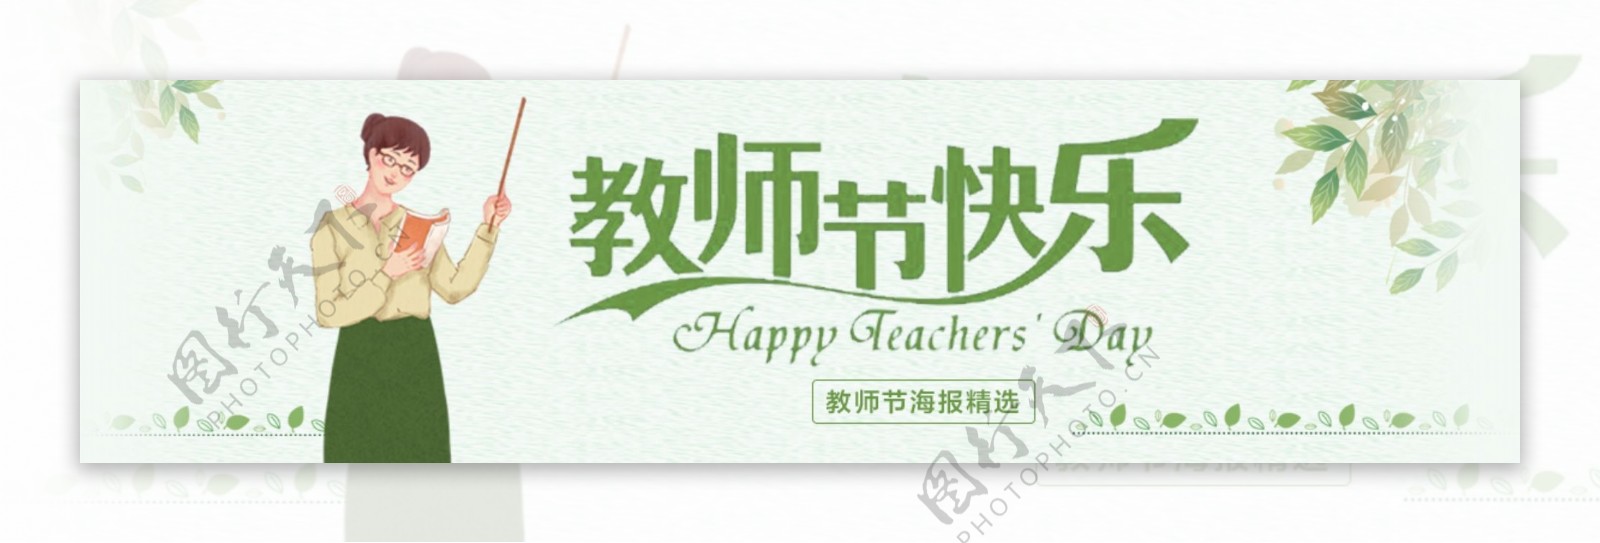 手绘插画清新绿色教师节海报设计